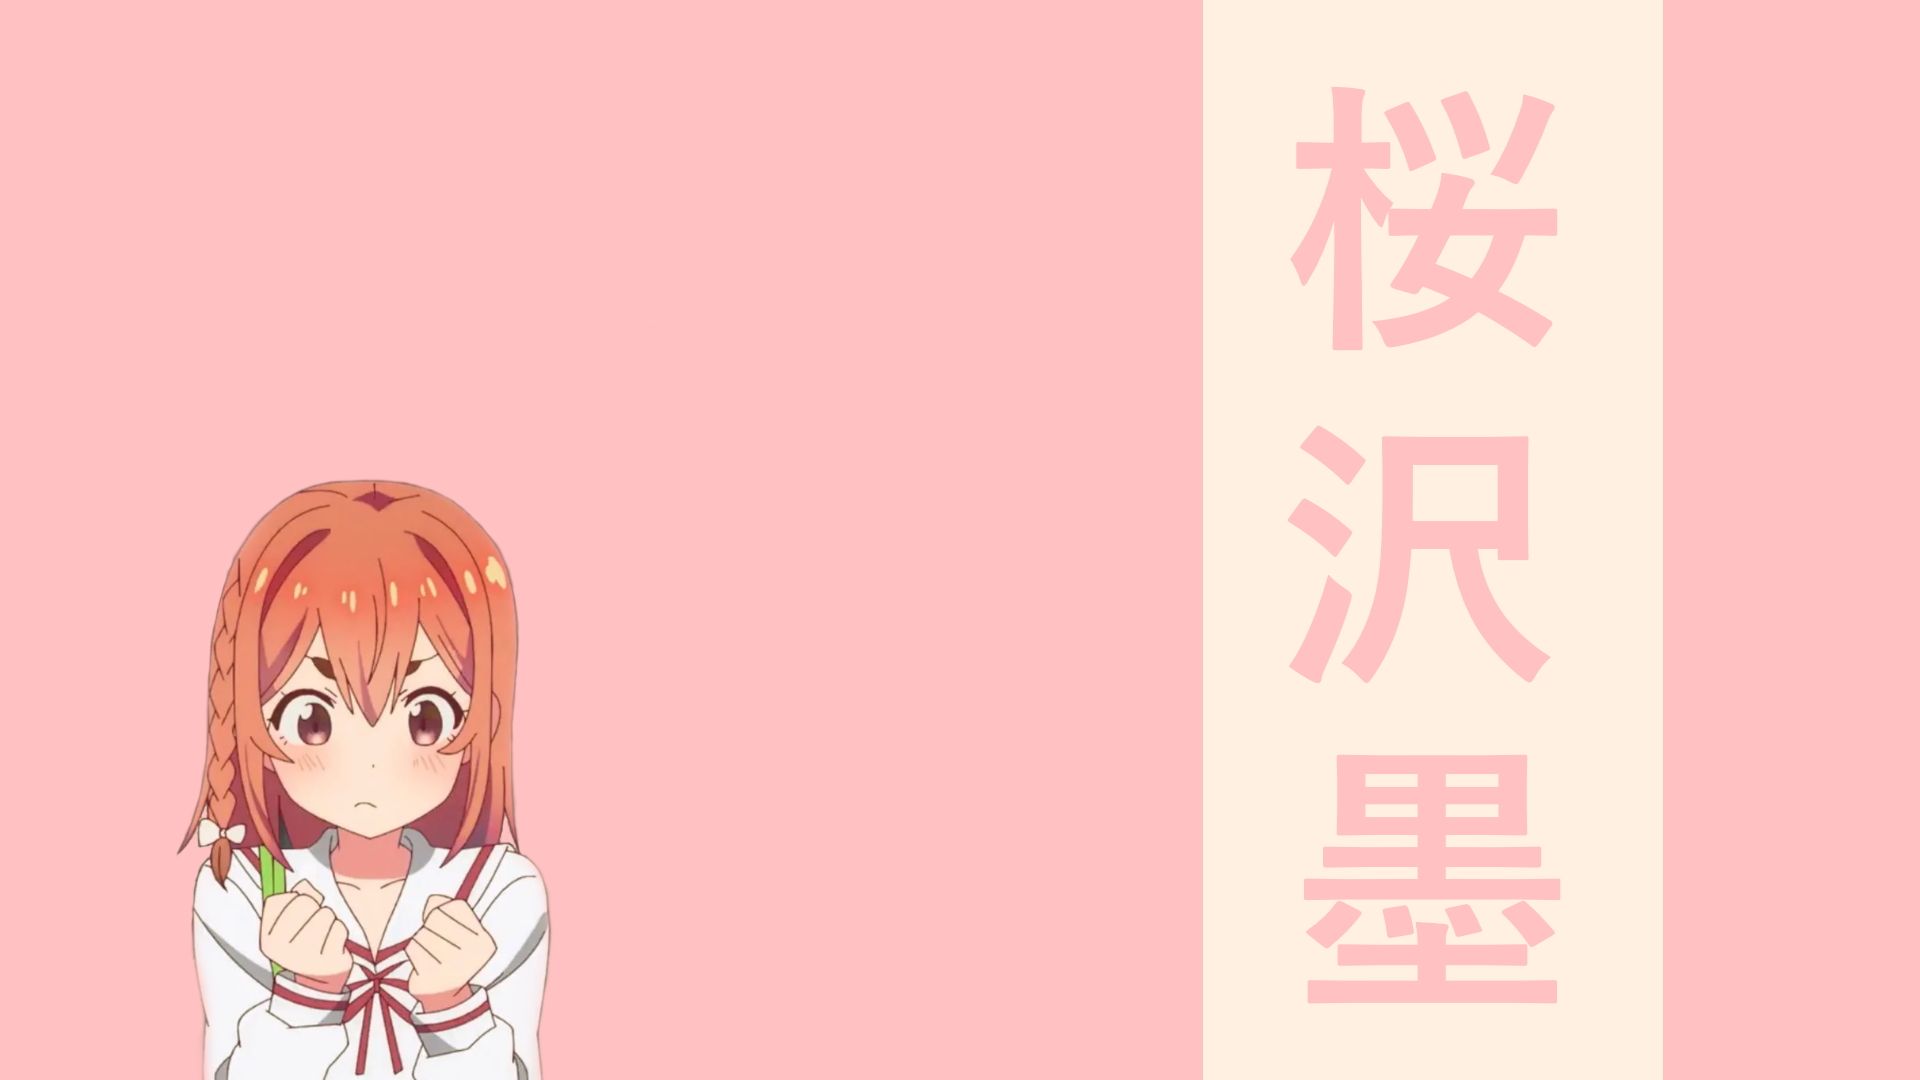 Rent a Girlfriend Sakurasawa HD Wallpaper. Background Imagex1080. Wallpaper background, Background image, Wallpaper